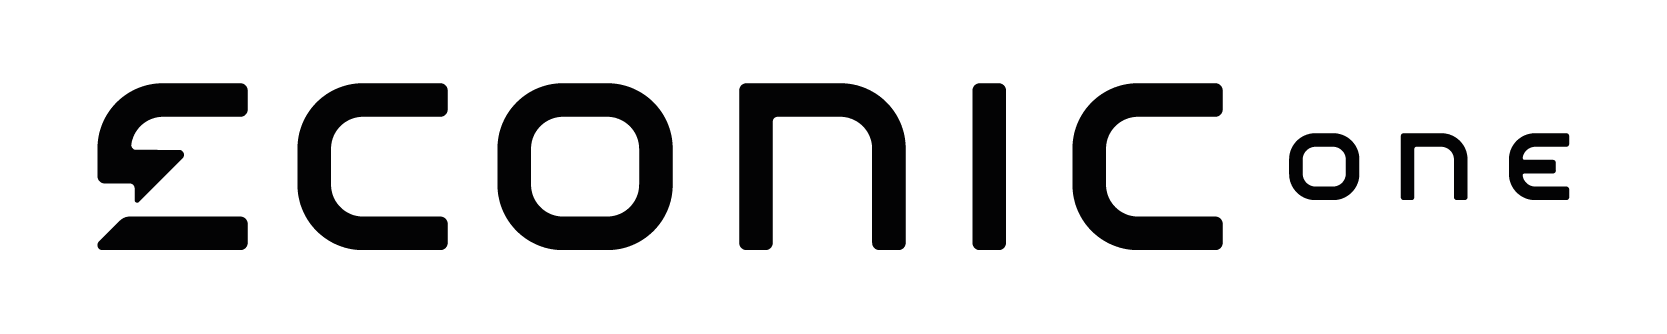 Econic one logo